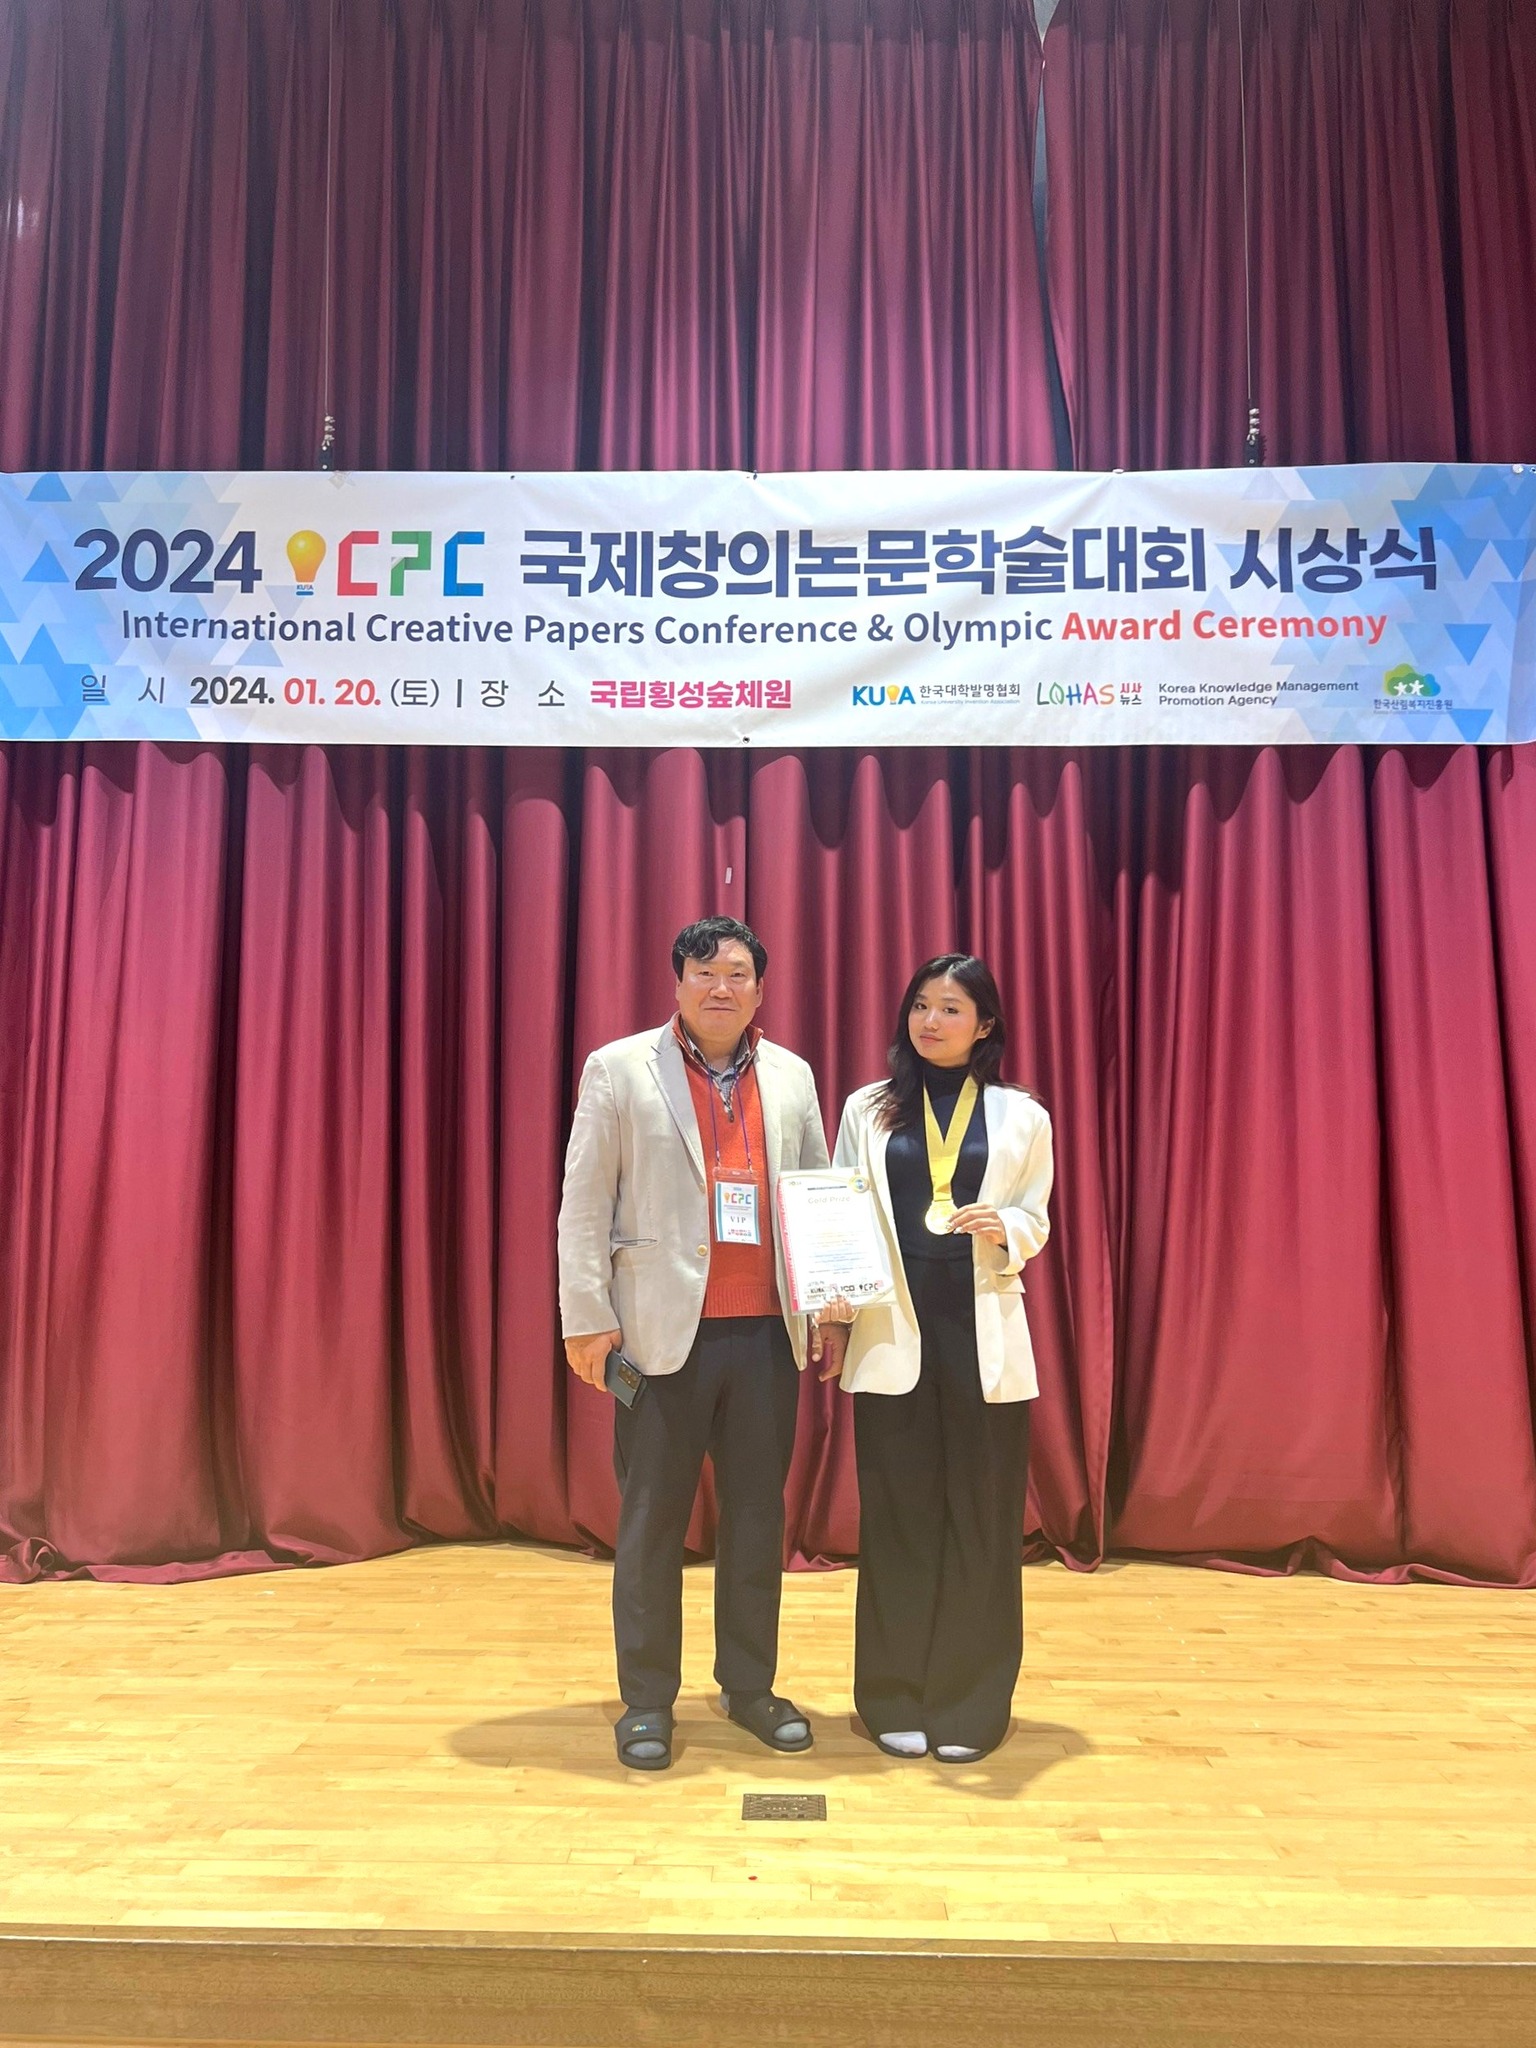 Học sinh Phương Uyên lớp 11C2 đã xuất sắc giành Huy chương Vàng tại Hội thảo các công trình Khoa học Sáng tạo 2024 (International Creative Papers Conference - ICPC 2024)